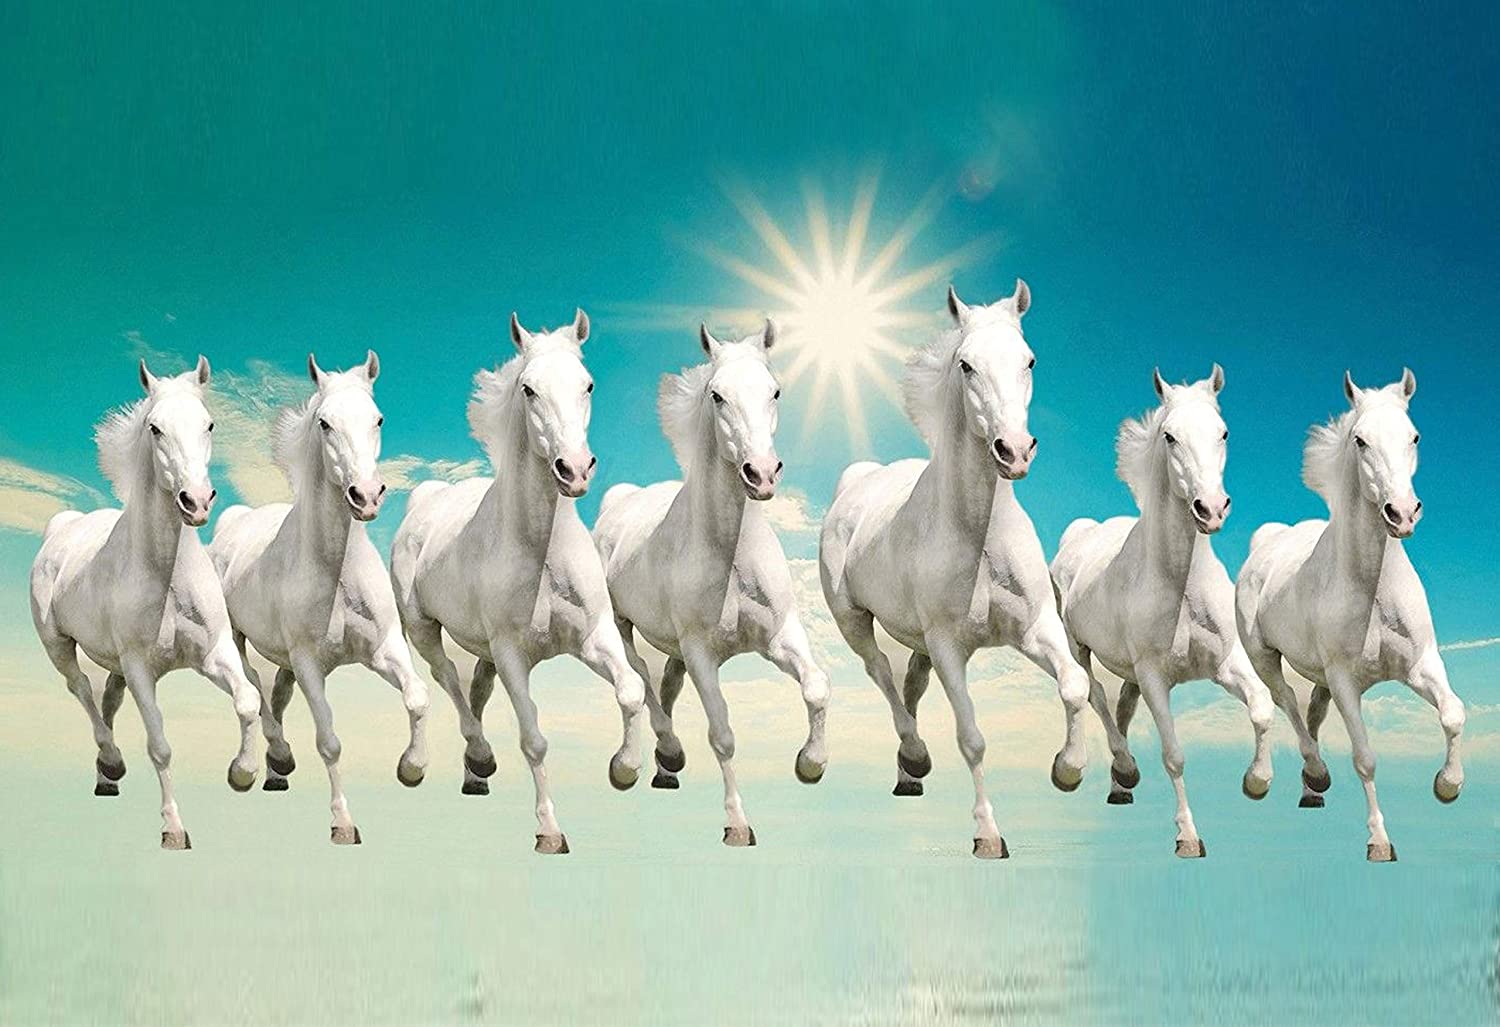 Buy wallpics™ Seven Lucky Running Horses Vastu Wallpaper Fully